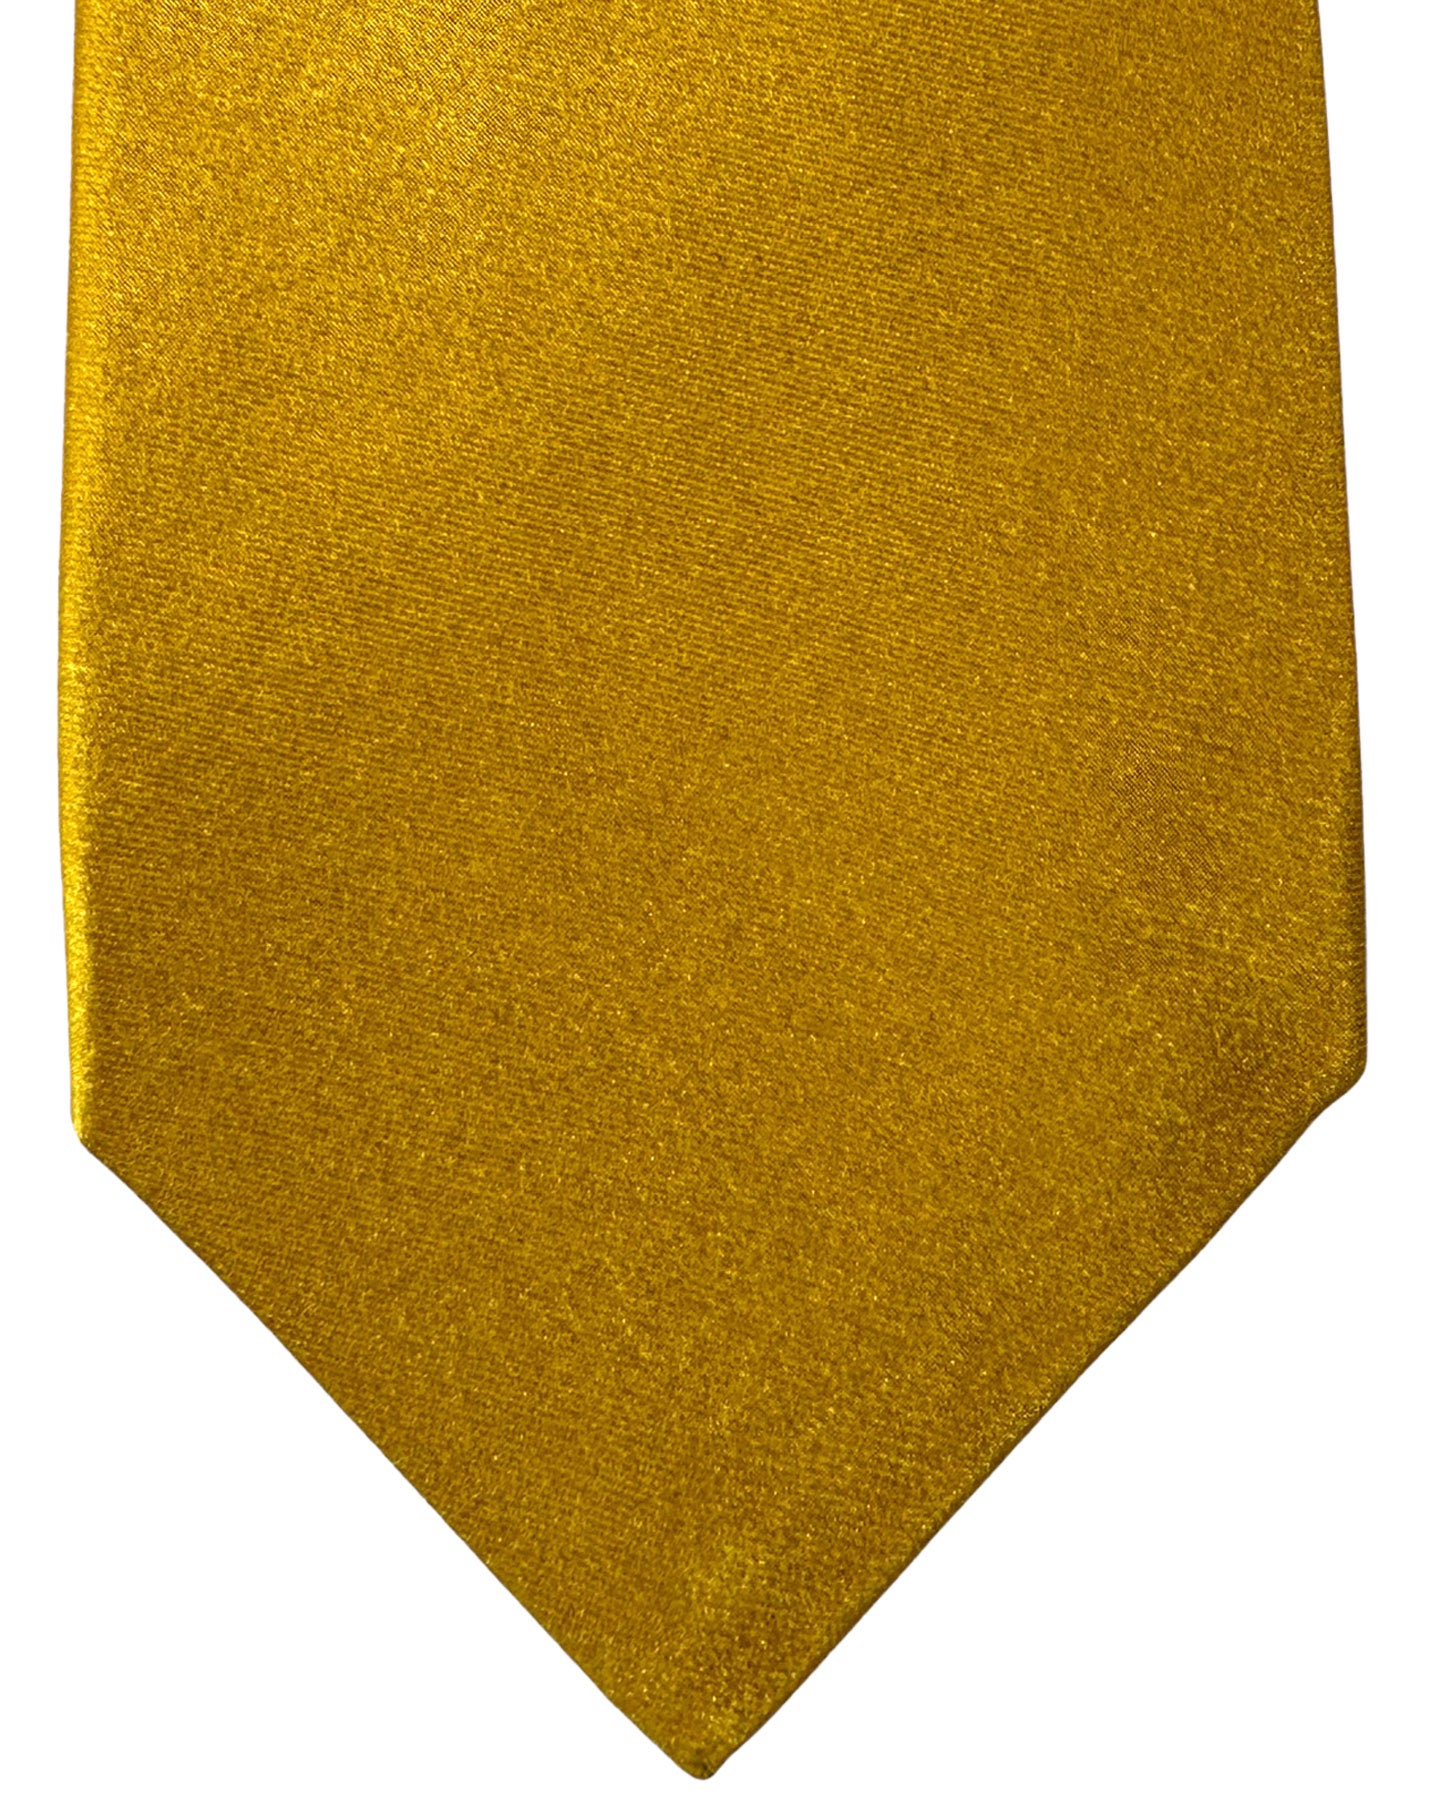 Kiton Silk Tie Mustard Solid Design - Sevenfold Necktie